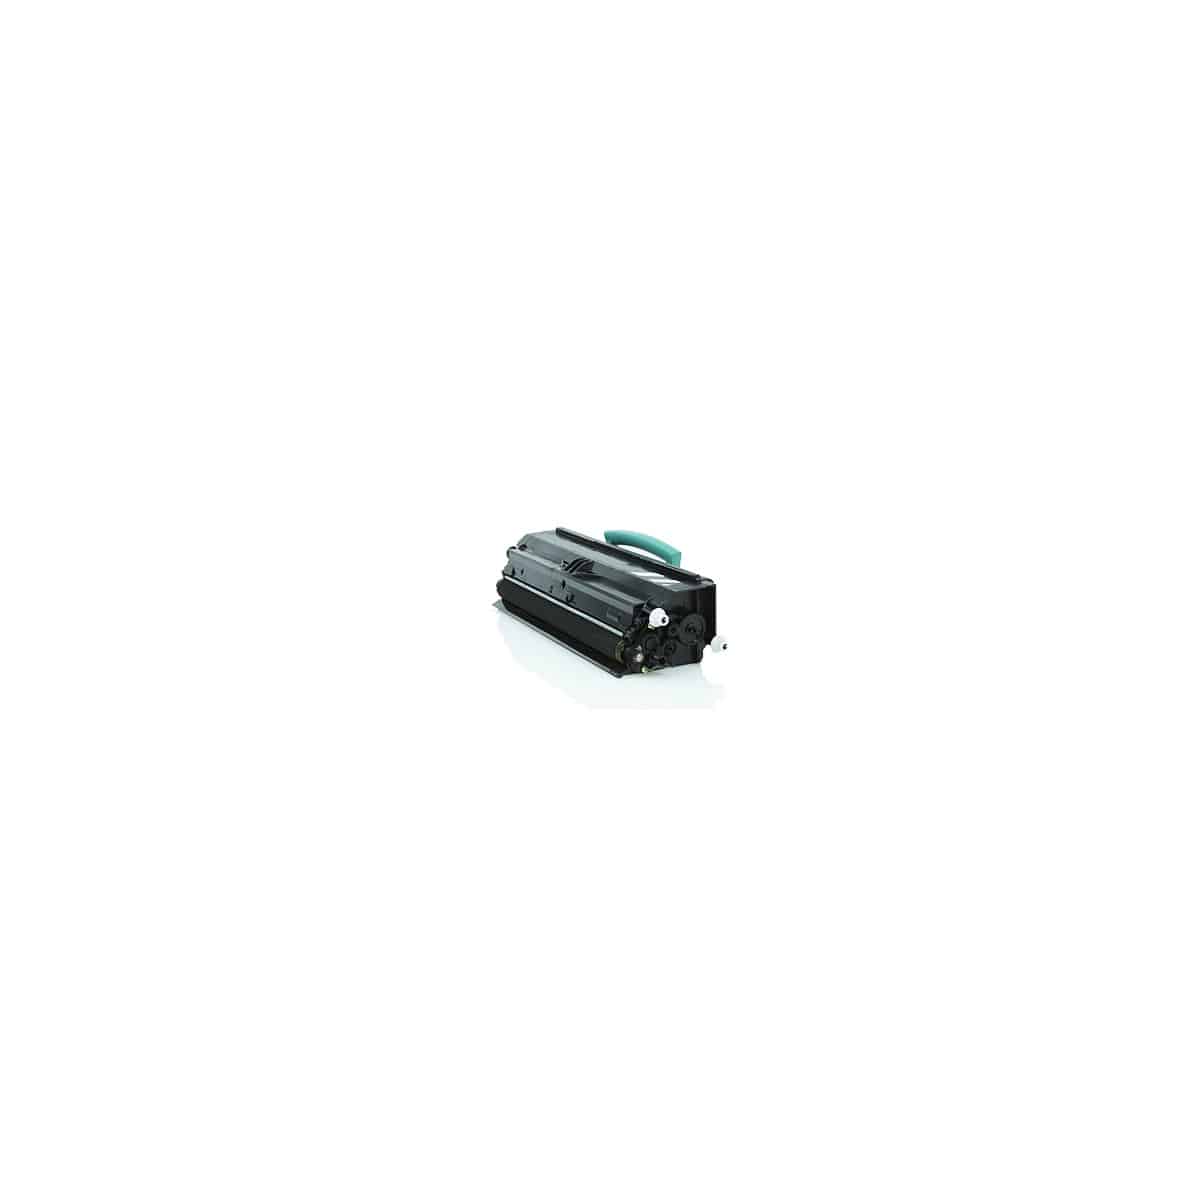 3330 / 3333 / 3335 BK Toner laser compatible Dell 593-10839 - Noir